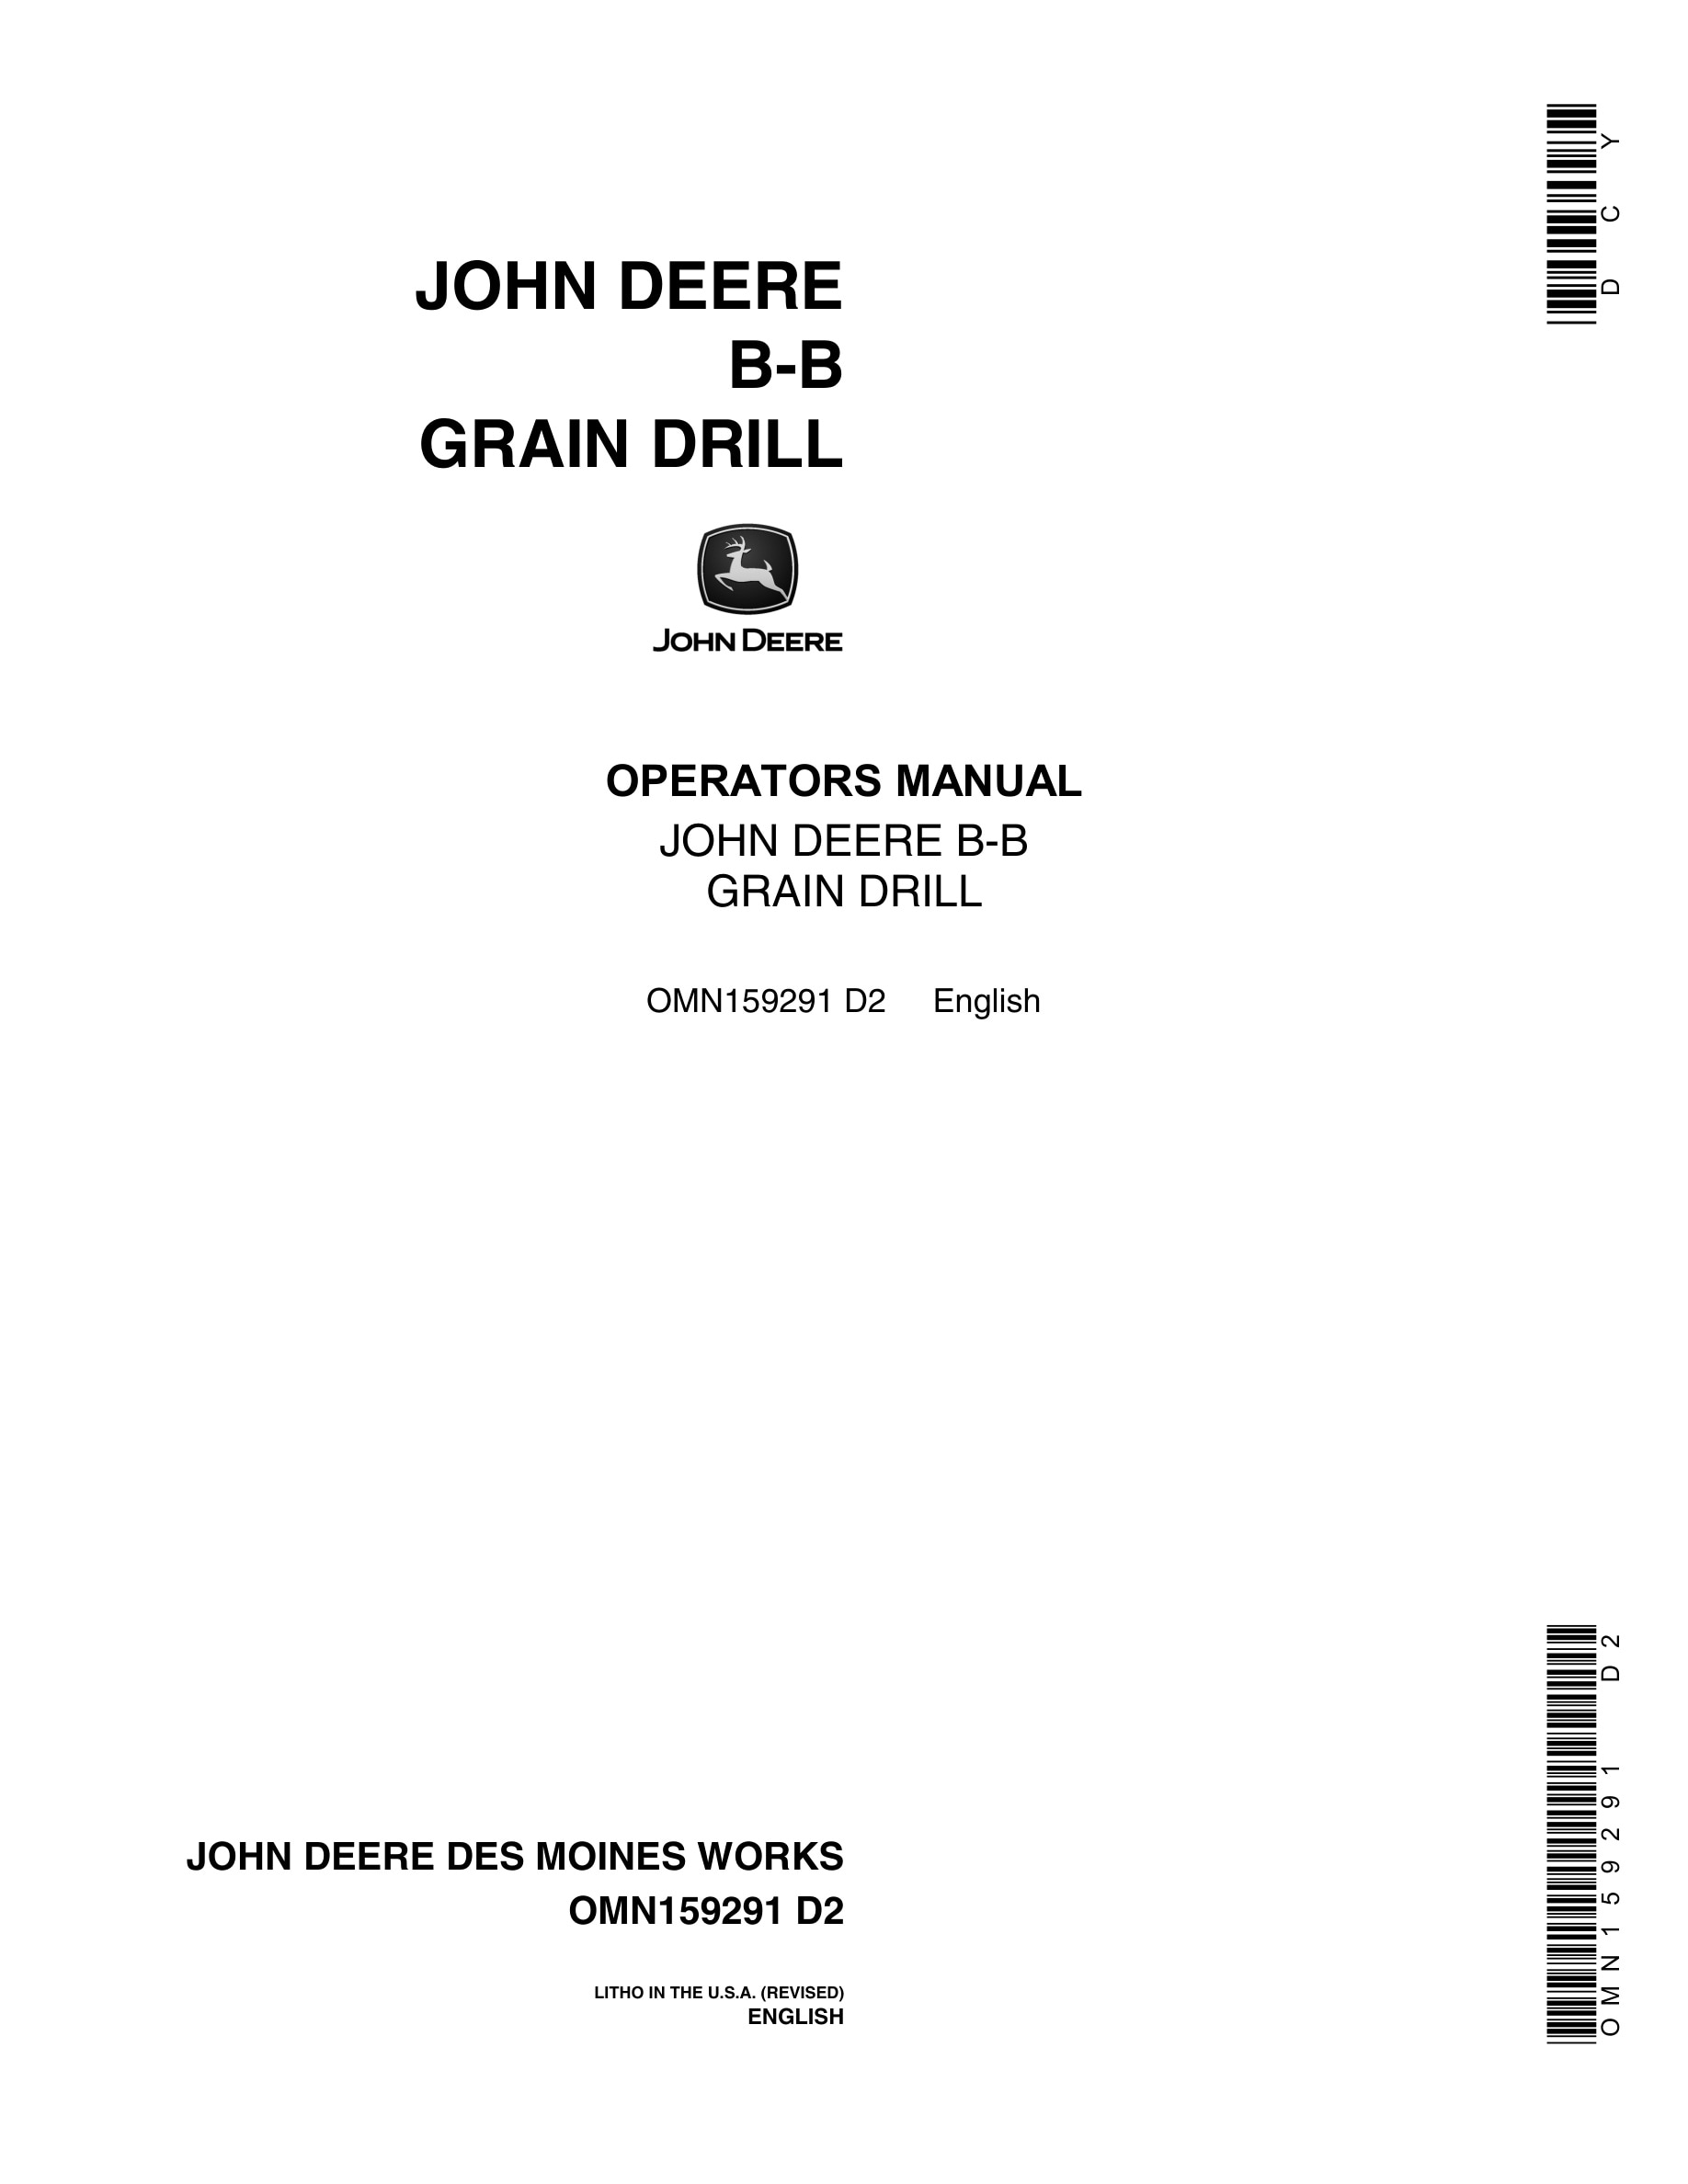 John Deere B-B GRAIN DRILL Operator Manual OMN159291-1